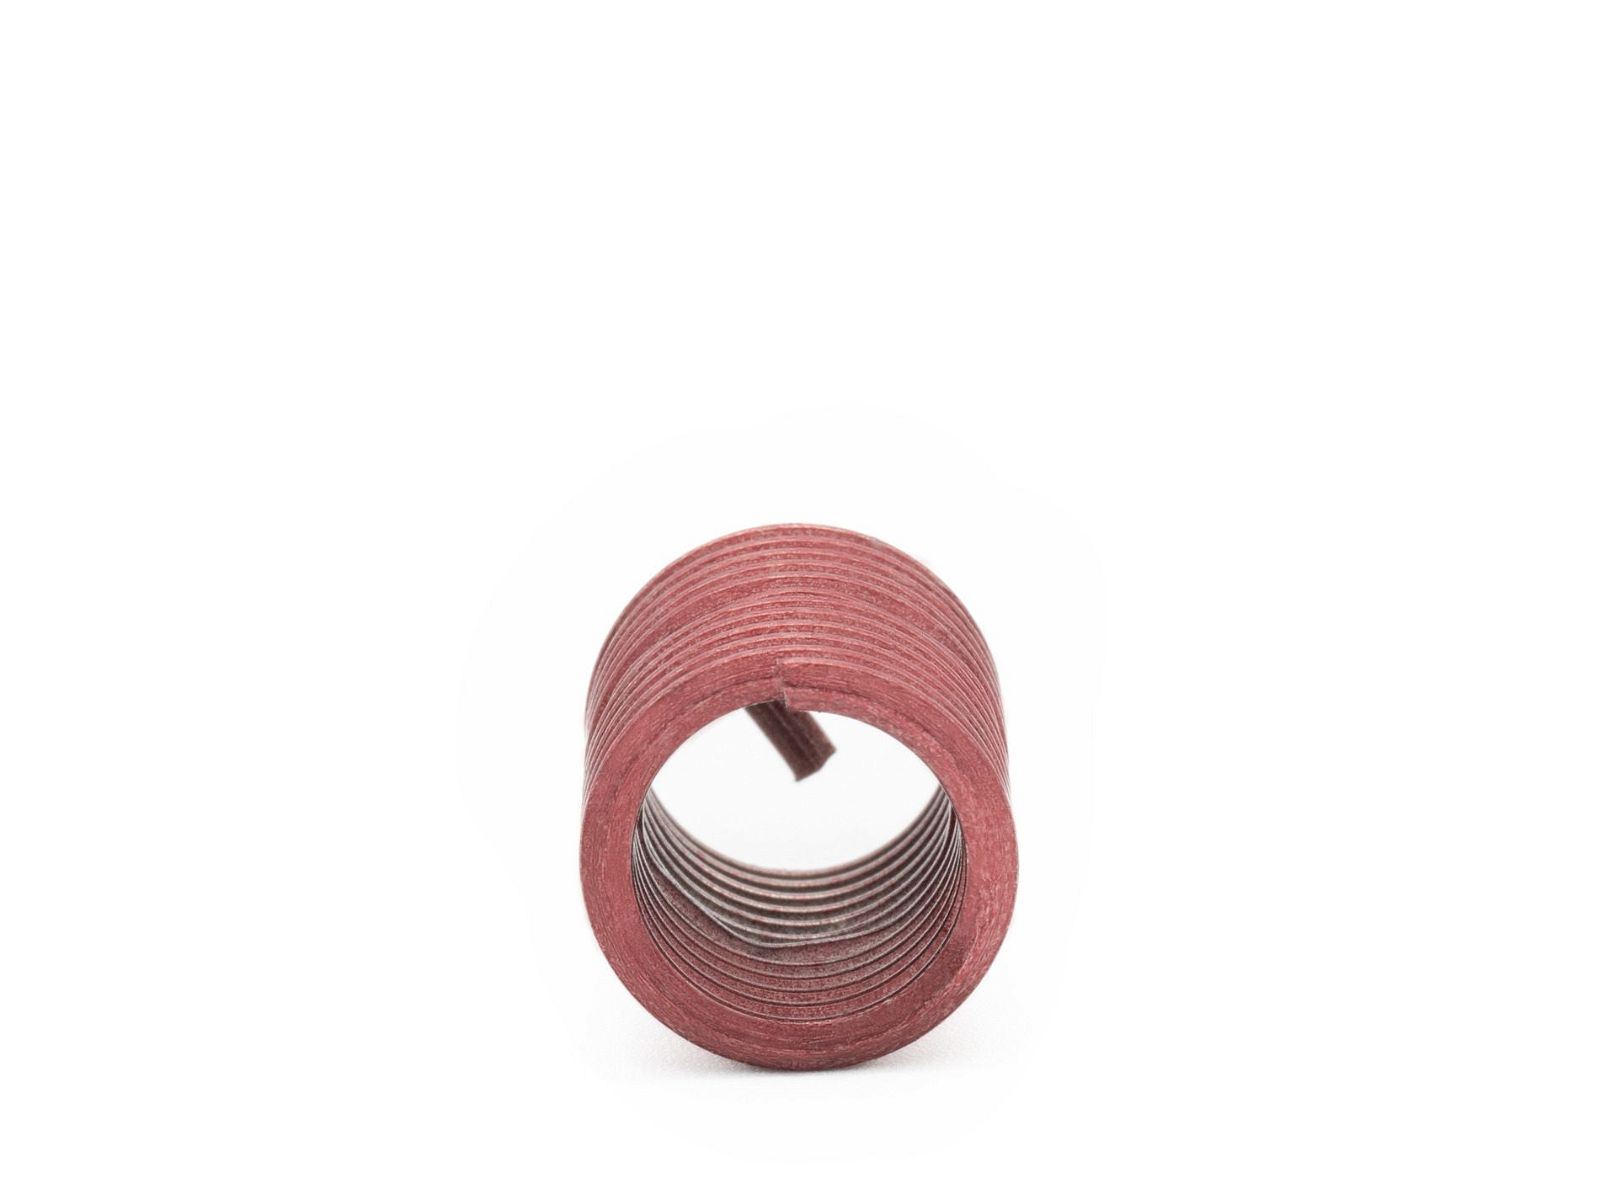 BaerCoil Wire Thread Inserts BSW 3/16 x 24 - 2.0 D (9.53 mm) - screw grip (screw locking) - 100 pcs.